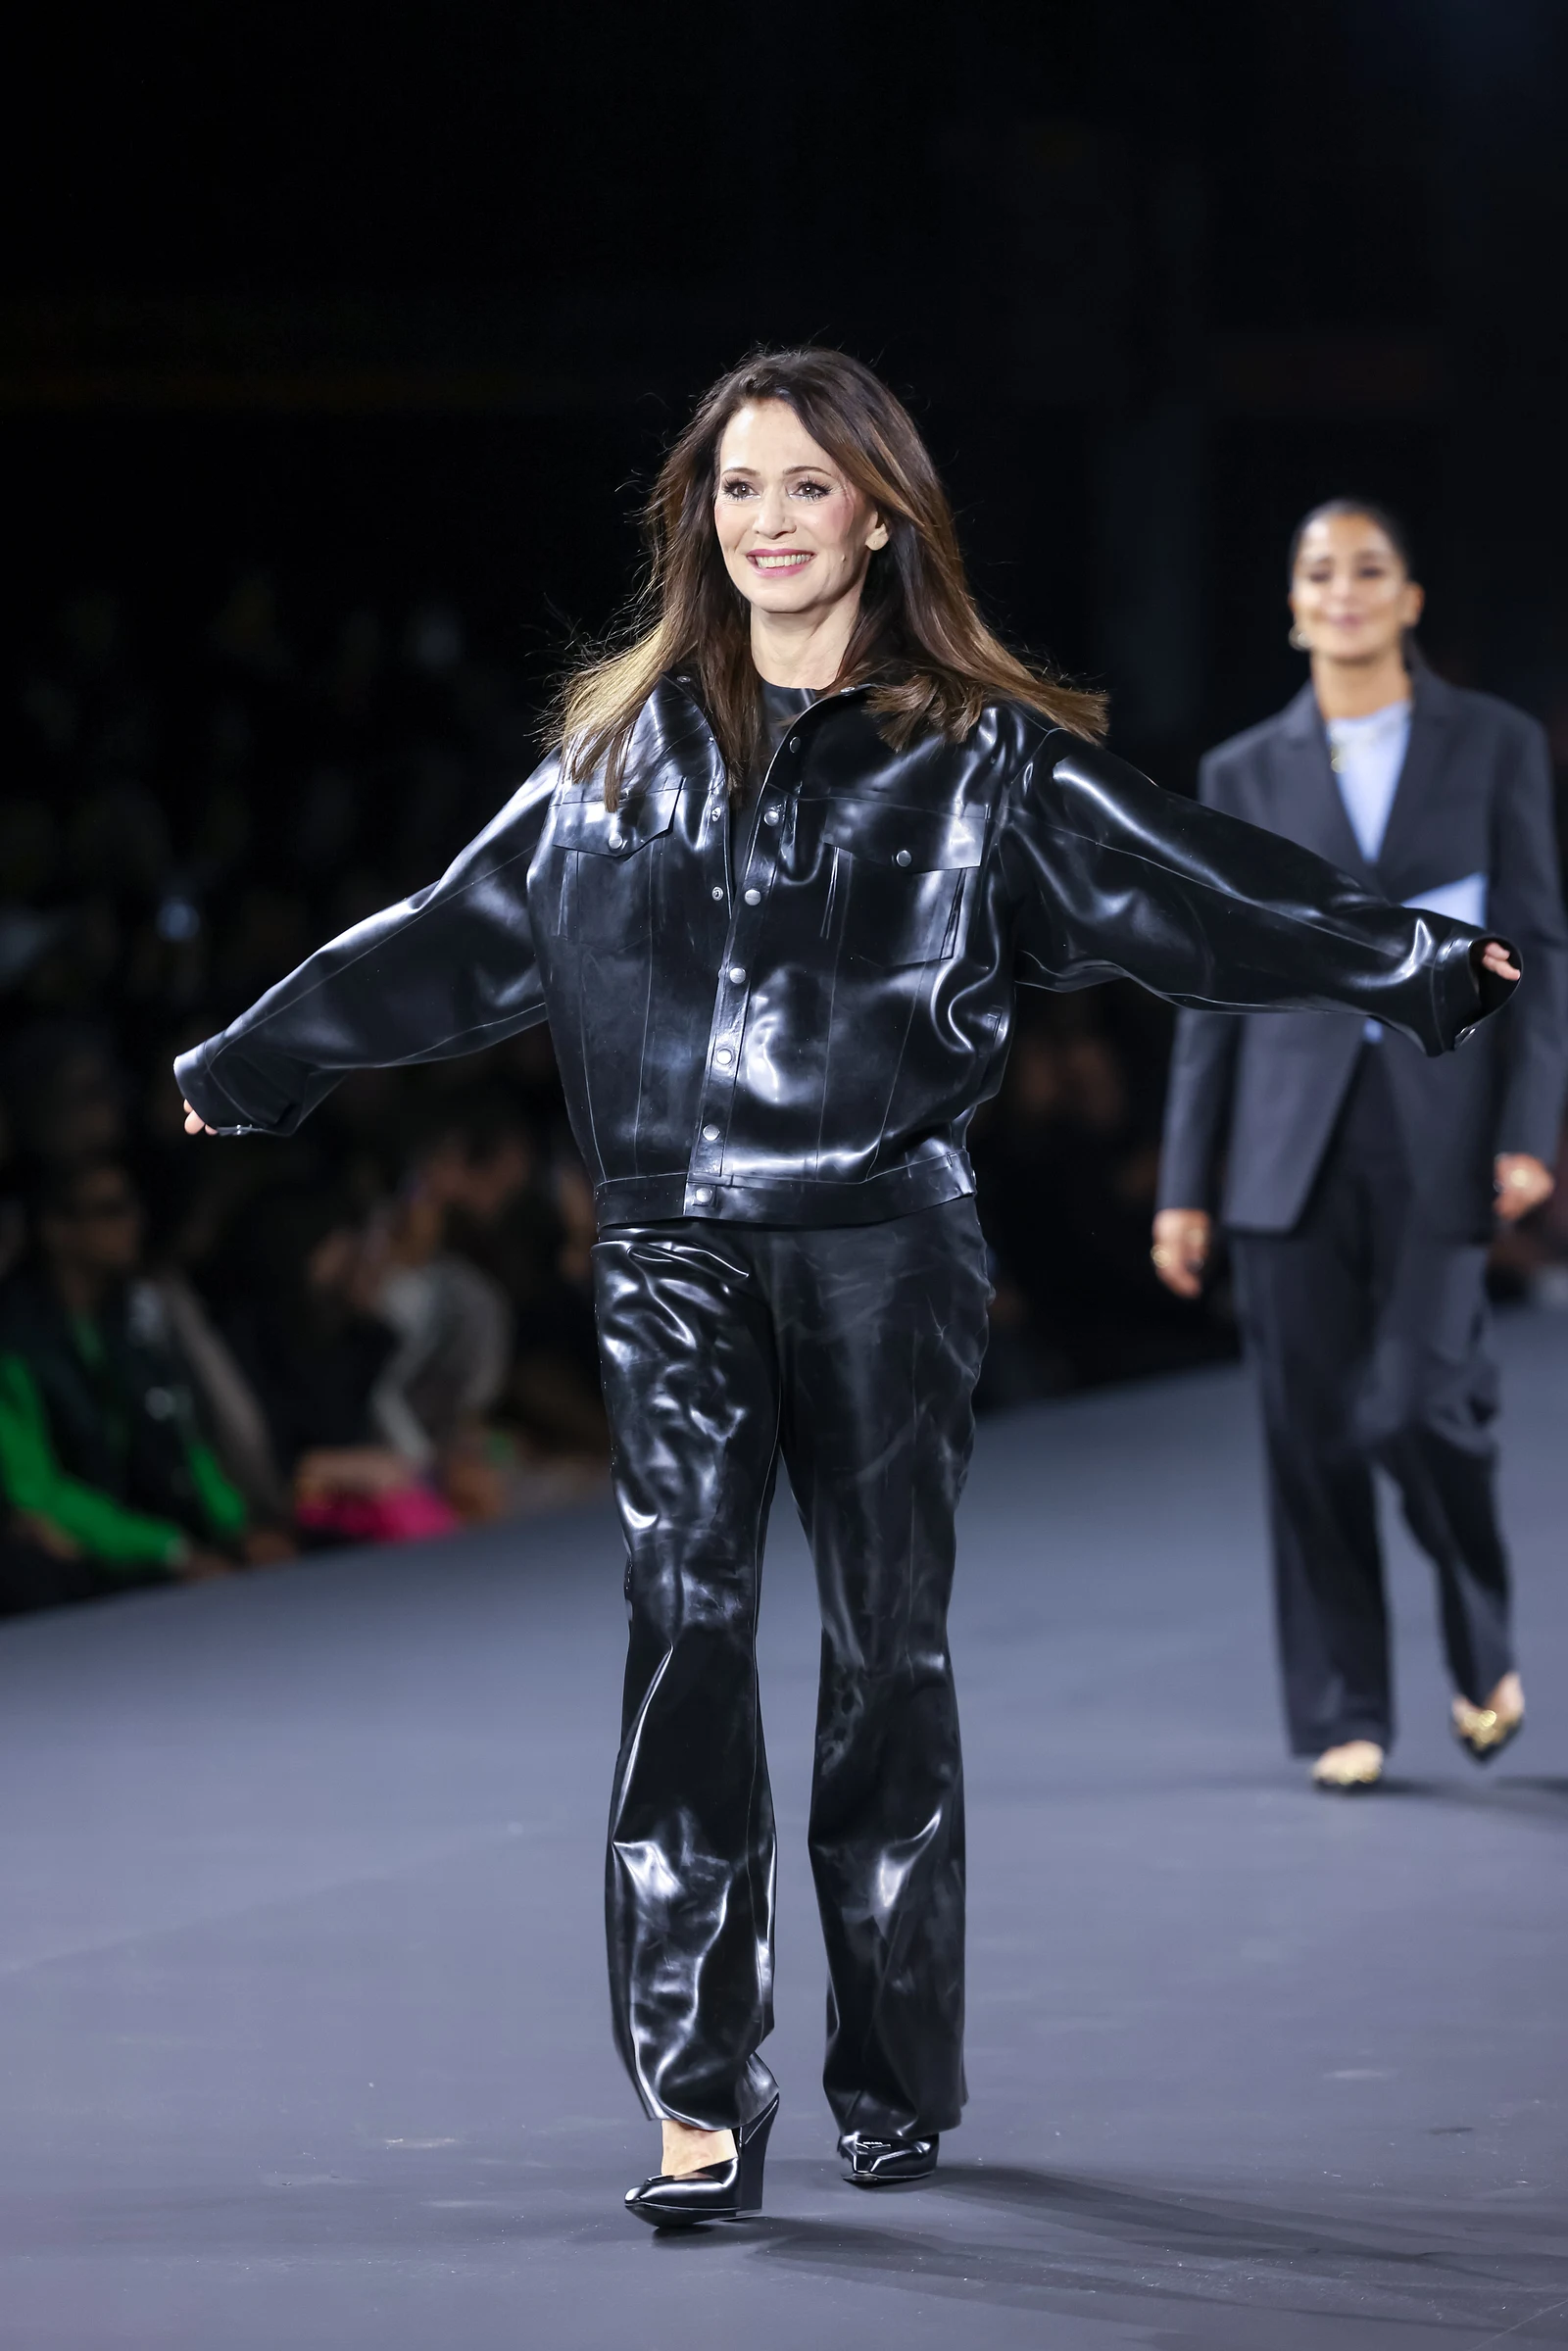 dedikation mineral Faktisk Iris Berben: In diesem Leder-Look verzaubert sie Paris | Liebenswert Magazin